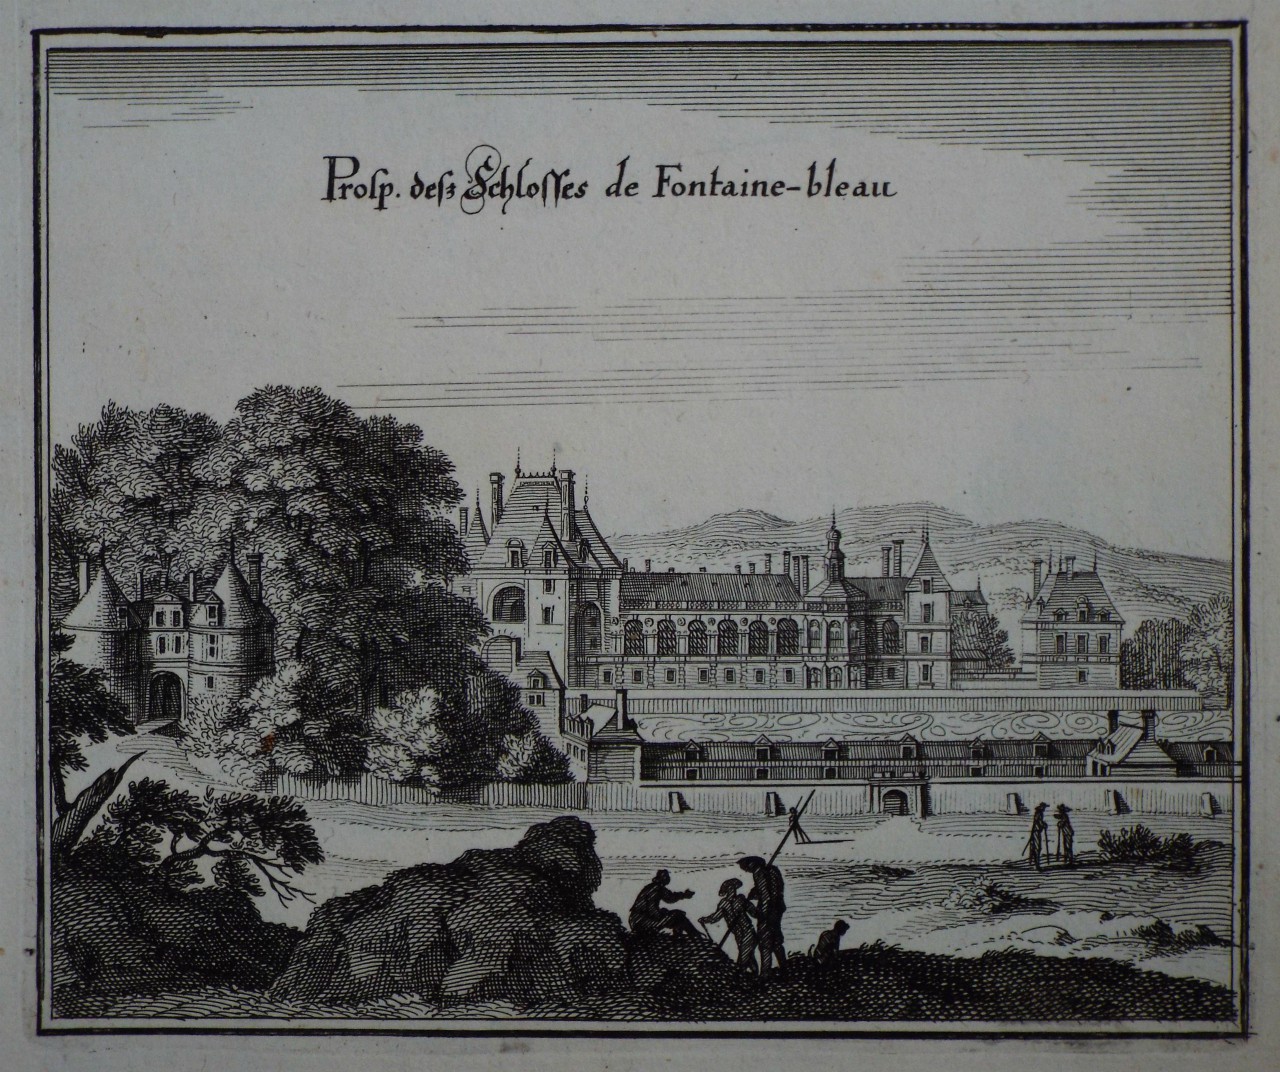 Print - Prosp. des Schlosses de Fontaine-bleau.